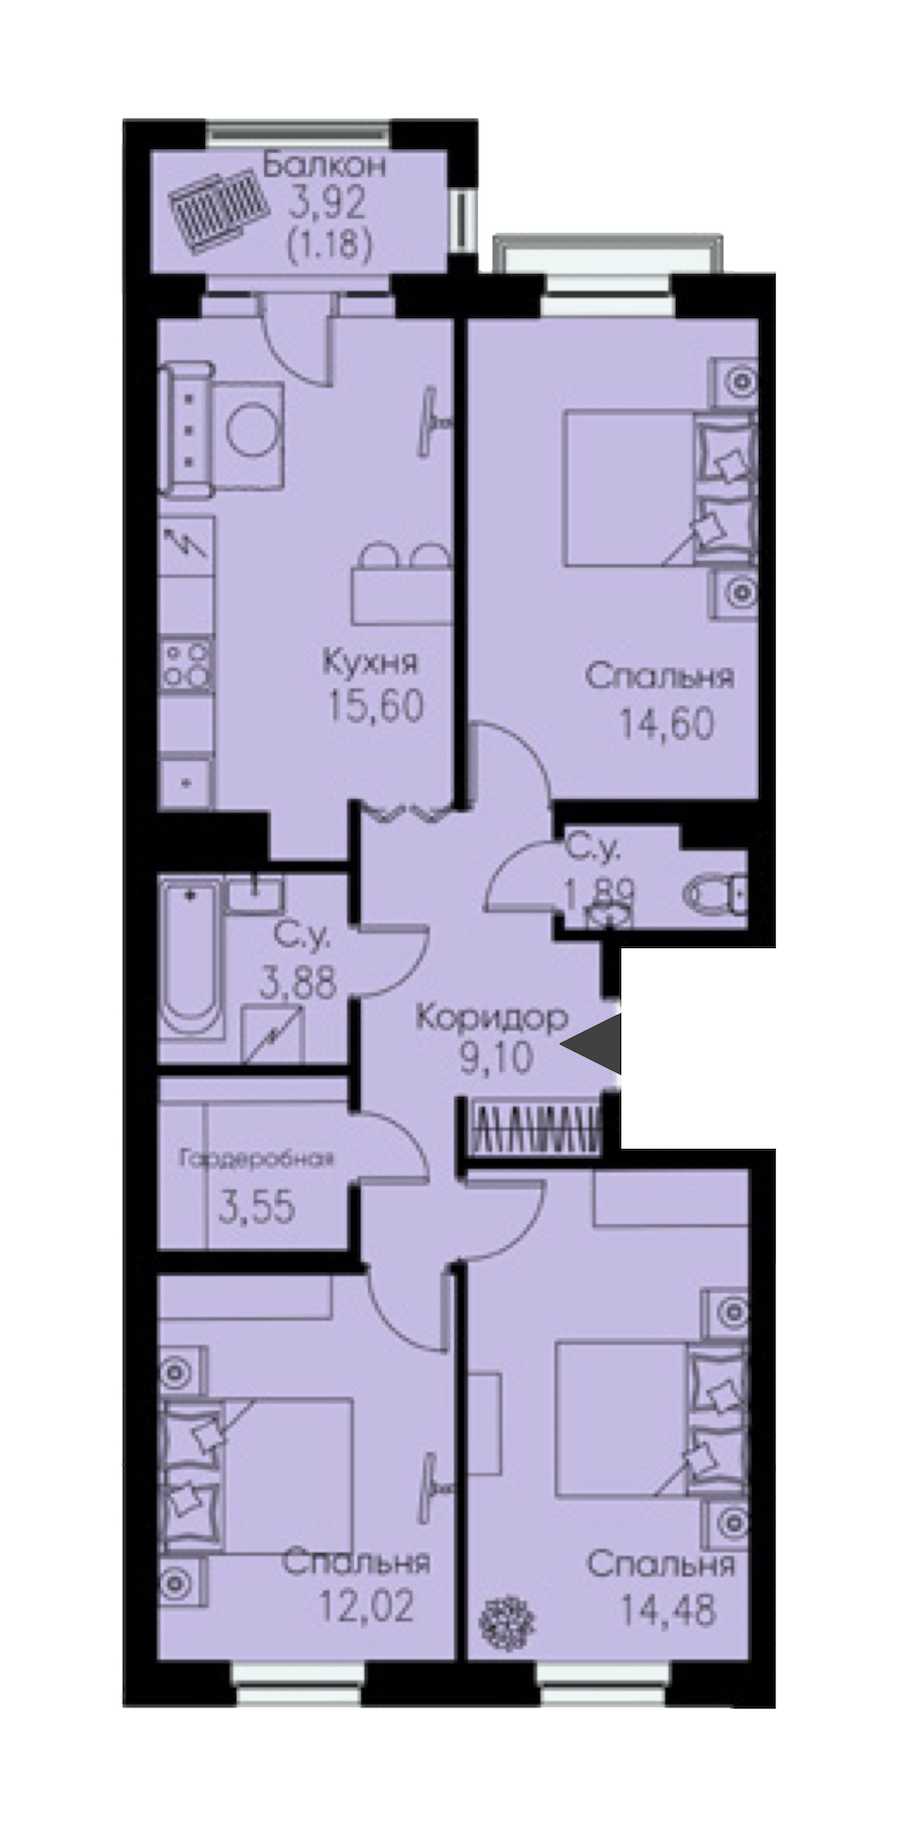 Трехкомнатная квартира в : площадь 76.3 м2 , этаж: 4 – купить в Санкт-Петербурге